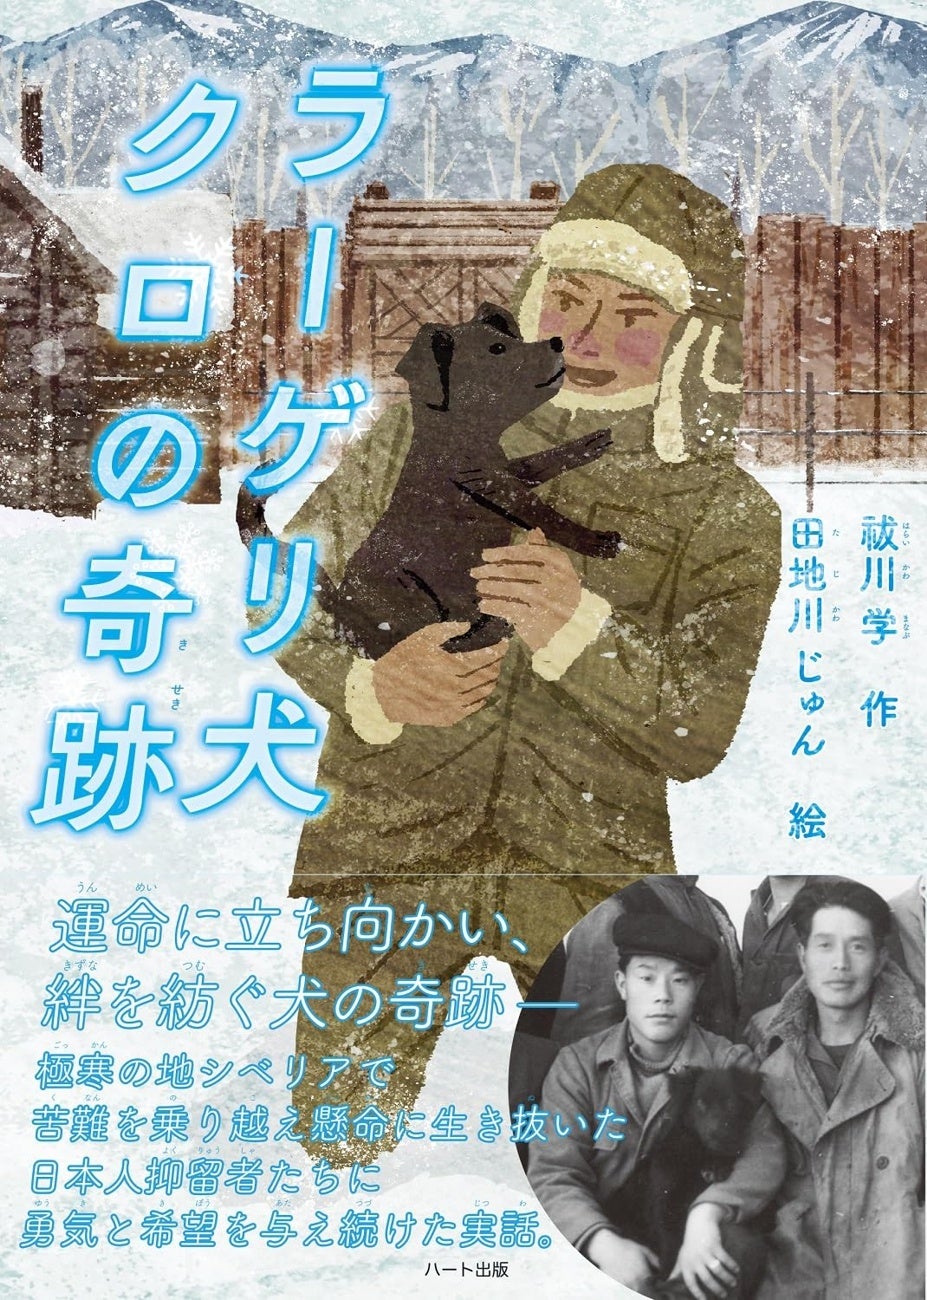 戦後７７年、ソ連による捕虜抑留の記憶も薄れる今、シベリア生まれの野良犬が日本人抑留者たちに勇気と癒やしを与え続けた実話『ラーゲリ犬クロの奇跡』発売